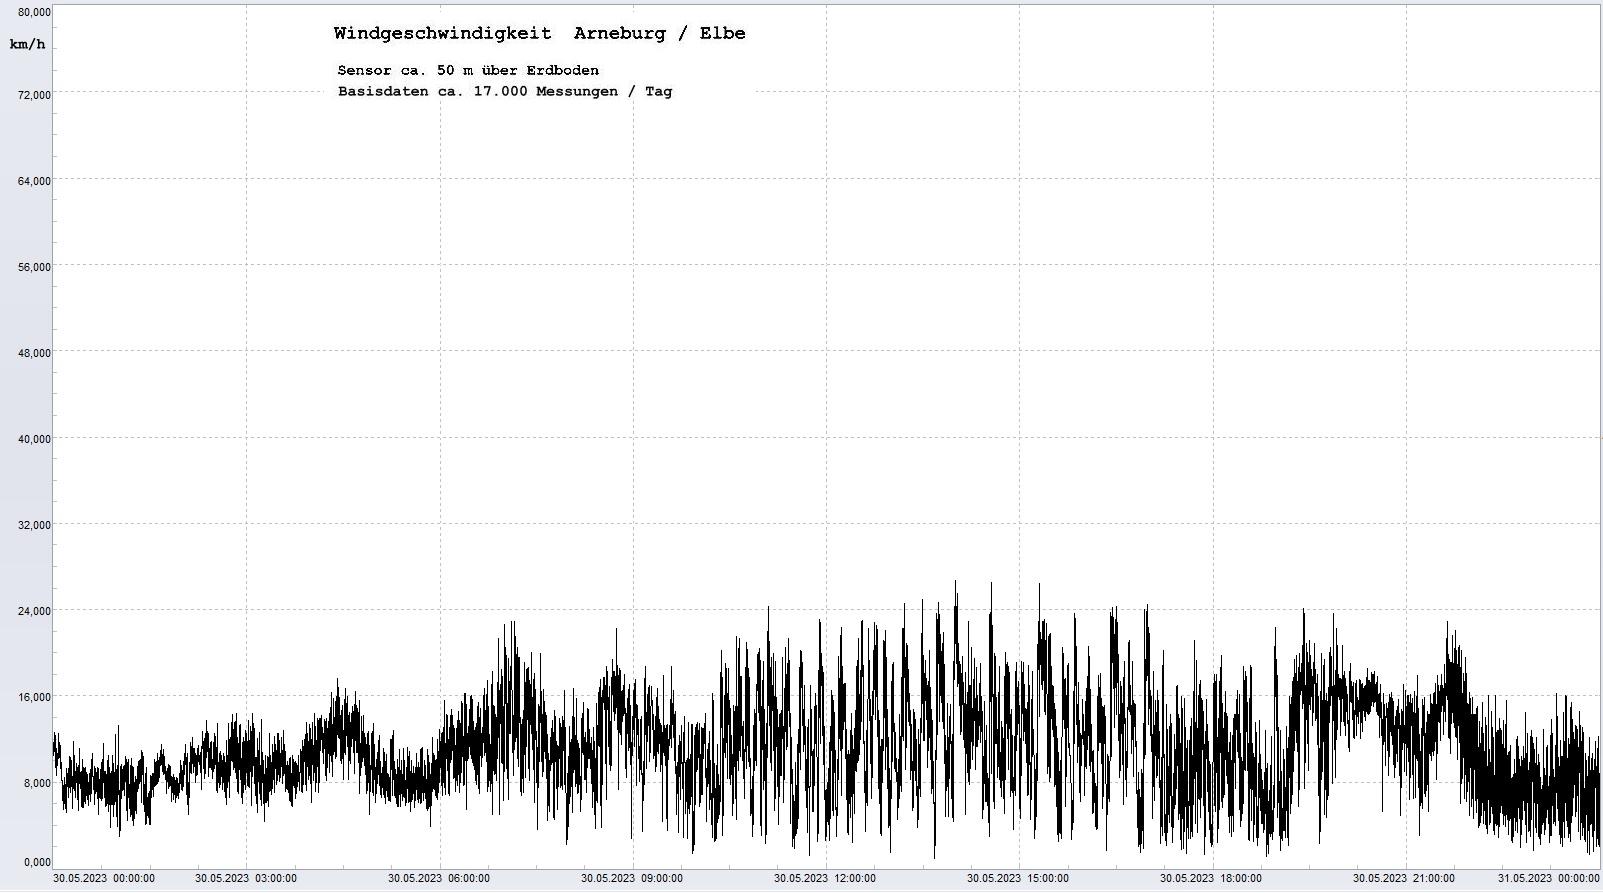 Arneburg Tages-Diagramm Winddaten, 30.05.2023
  Diagramm, Sensor auf Gebäude, ca. 50 m über Erdboden, Basis: 5s-Aufzeichnung